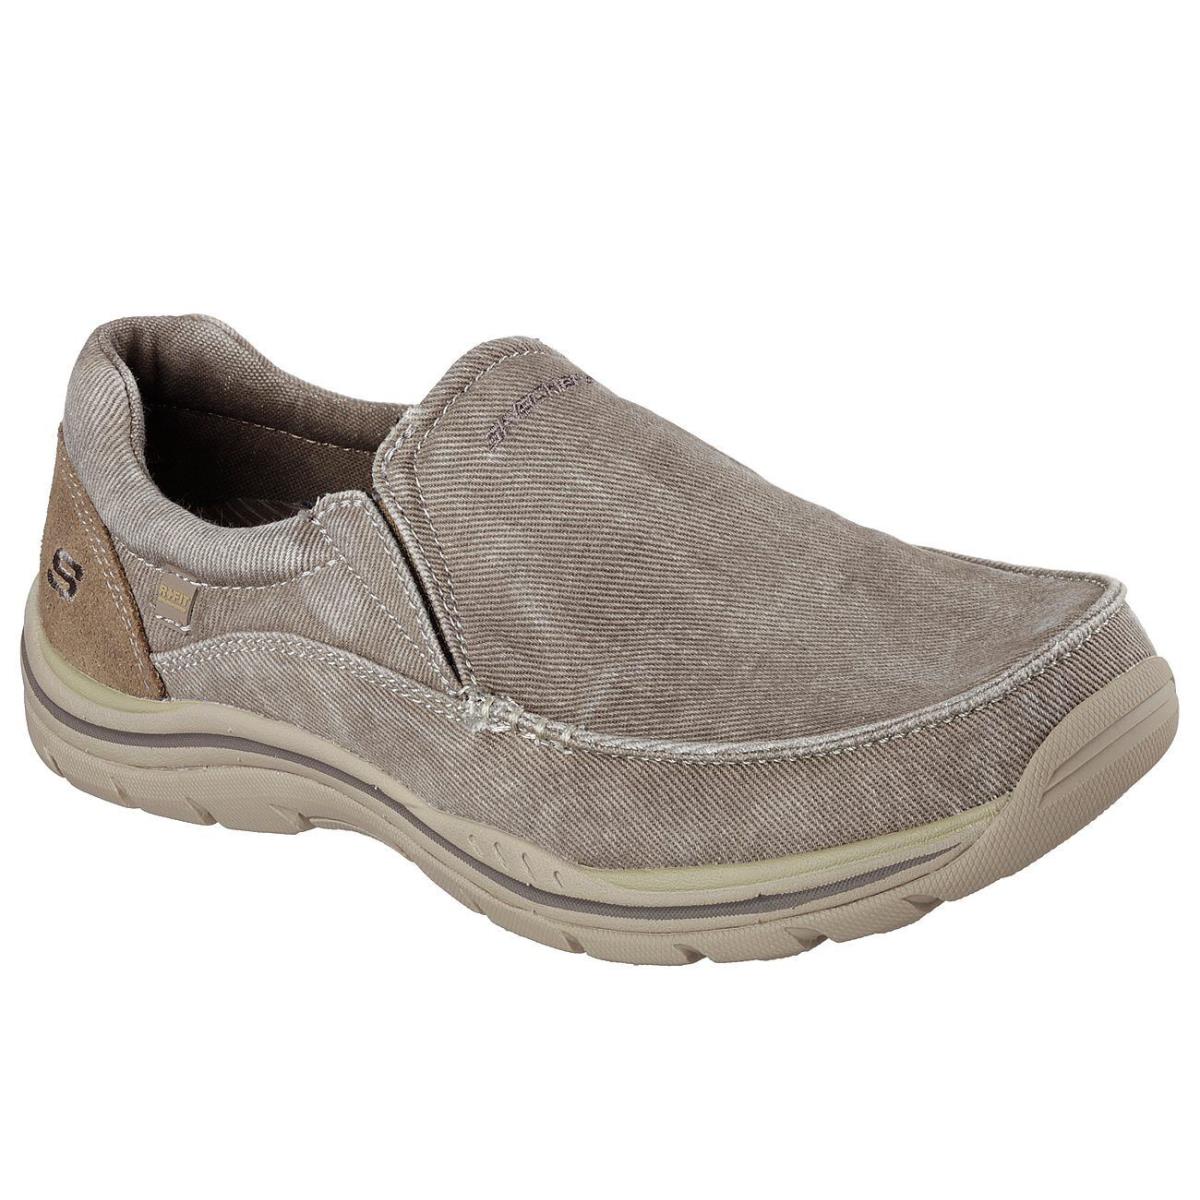 Men`s Skechers Relaxed Fit: Expected Avillo Loafer Shoes 64109 /khk Sizes 8-14 - Khaki